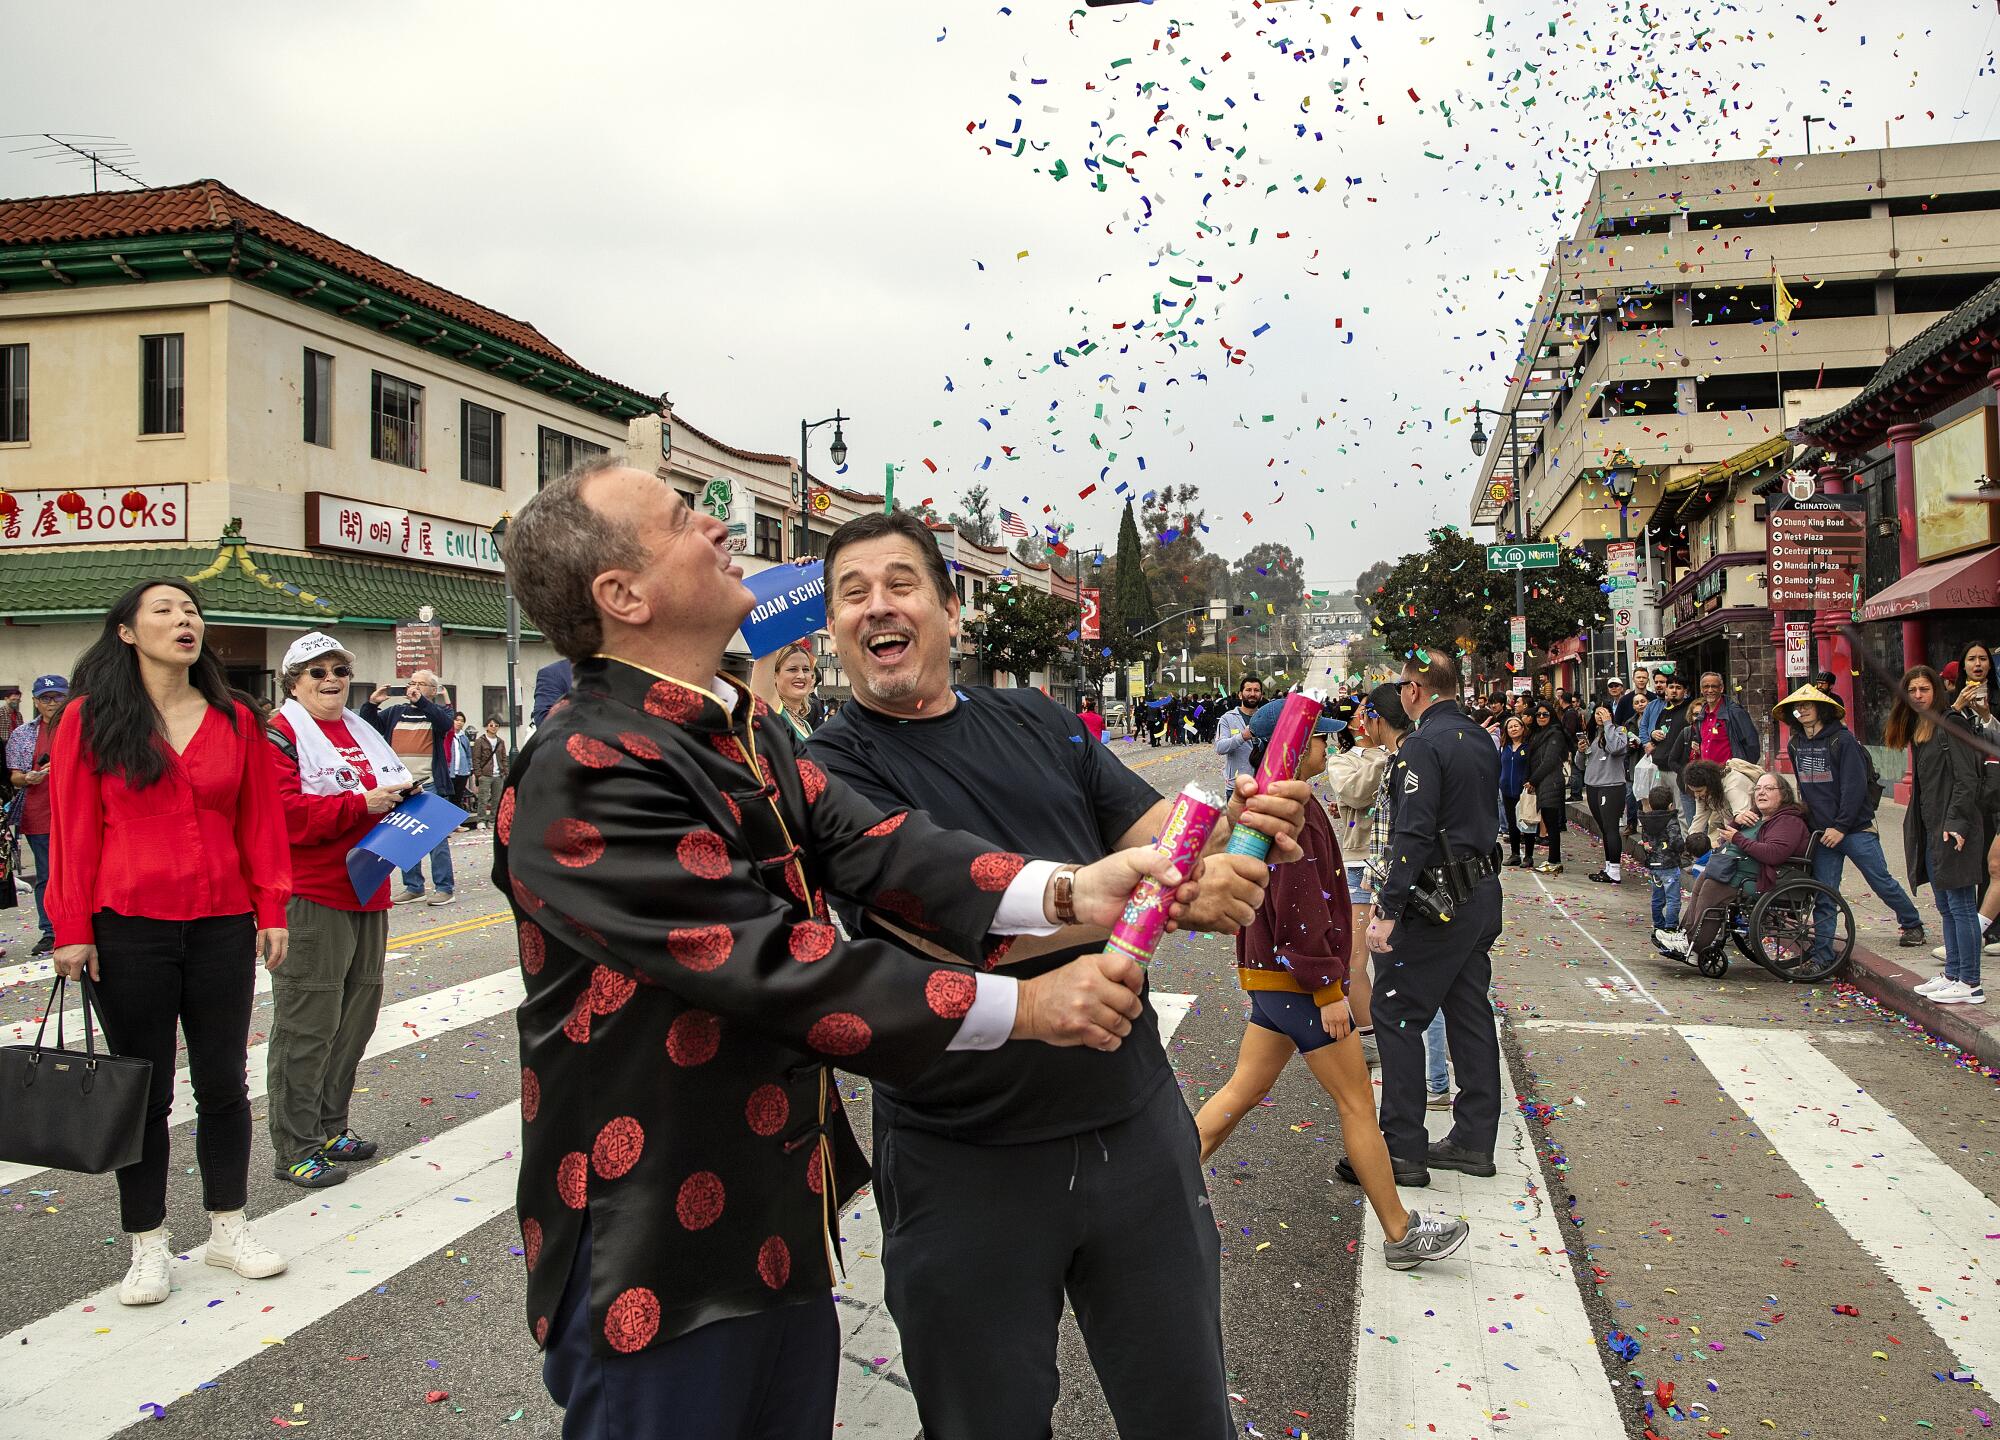 Adam Schiff, vêtu d'une veste chinoise, libère des confettis dans l'air depuis un tube avec un autre homme dans la rue pendant que d'autres regardent